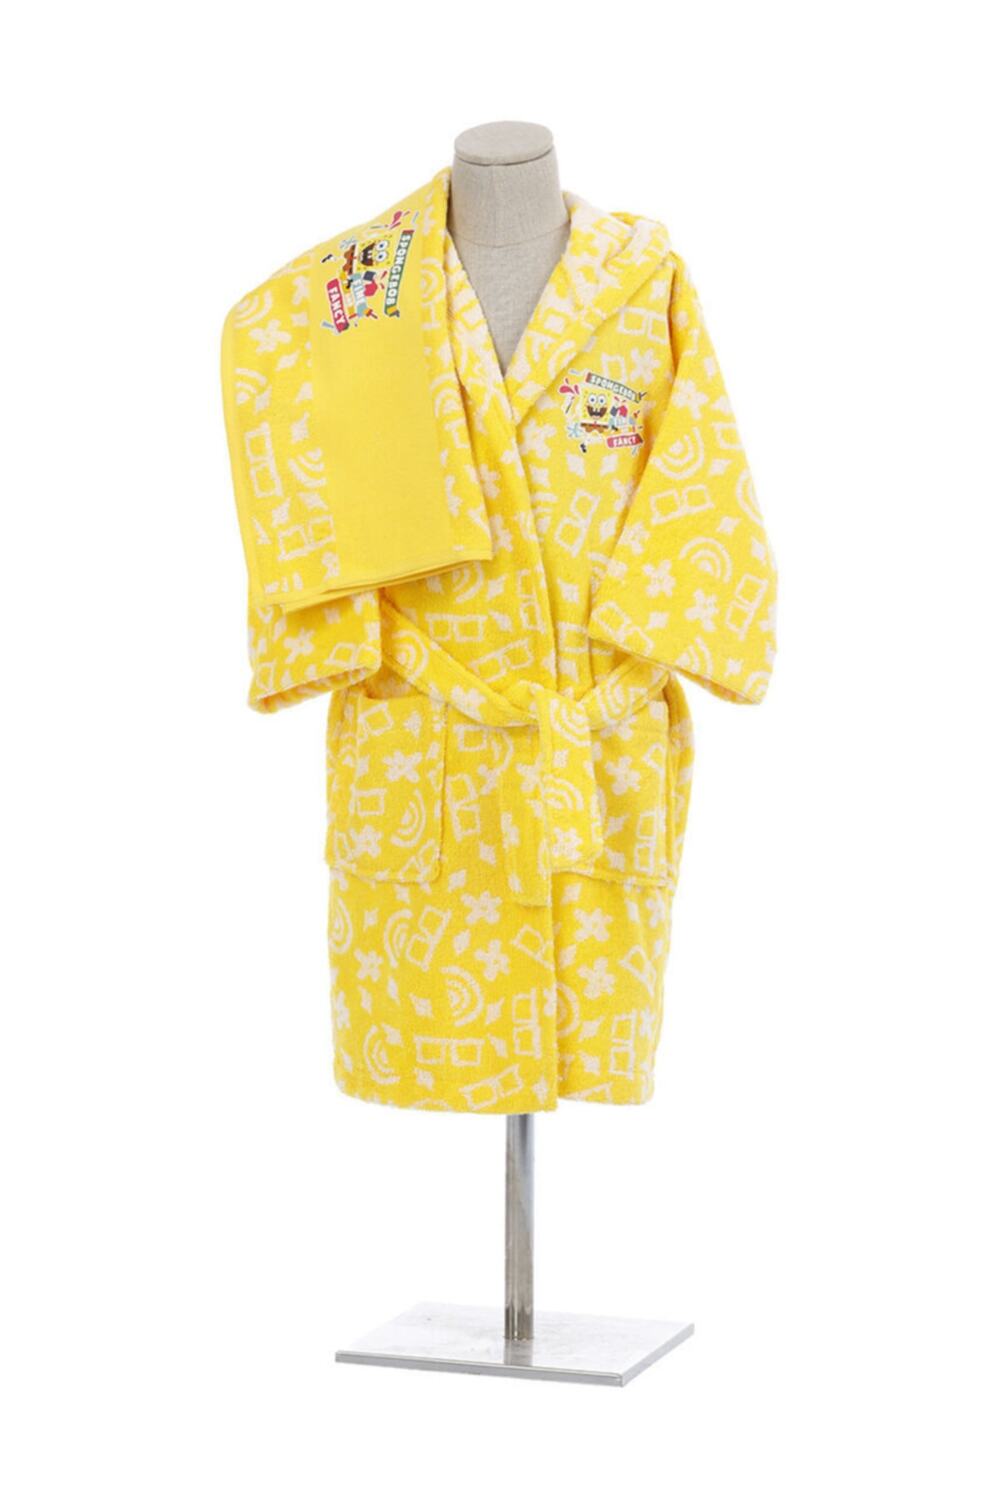 Детский банный халат Sponge Bob цвет: желтый (9-10 лет), размер 9-10 лет ozd773854 Детский банный халат Sponge Bob цвет: желтый (9-10 лет) - фото 1